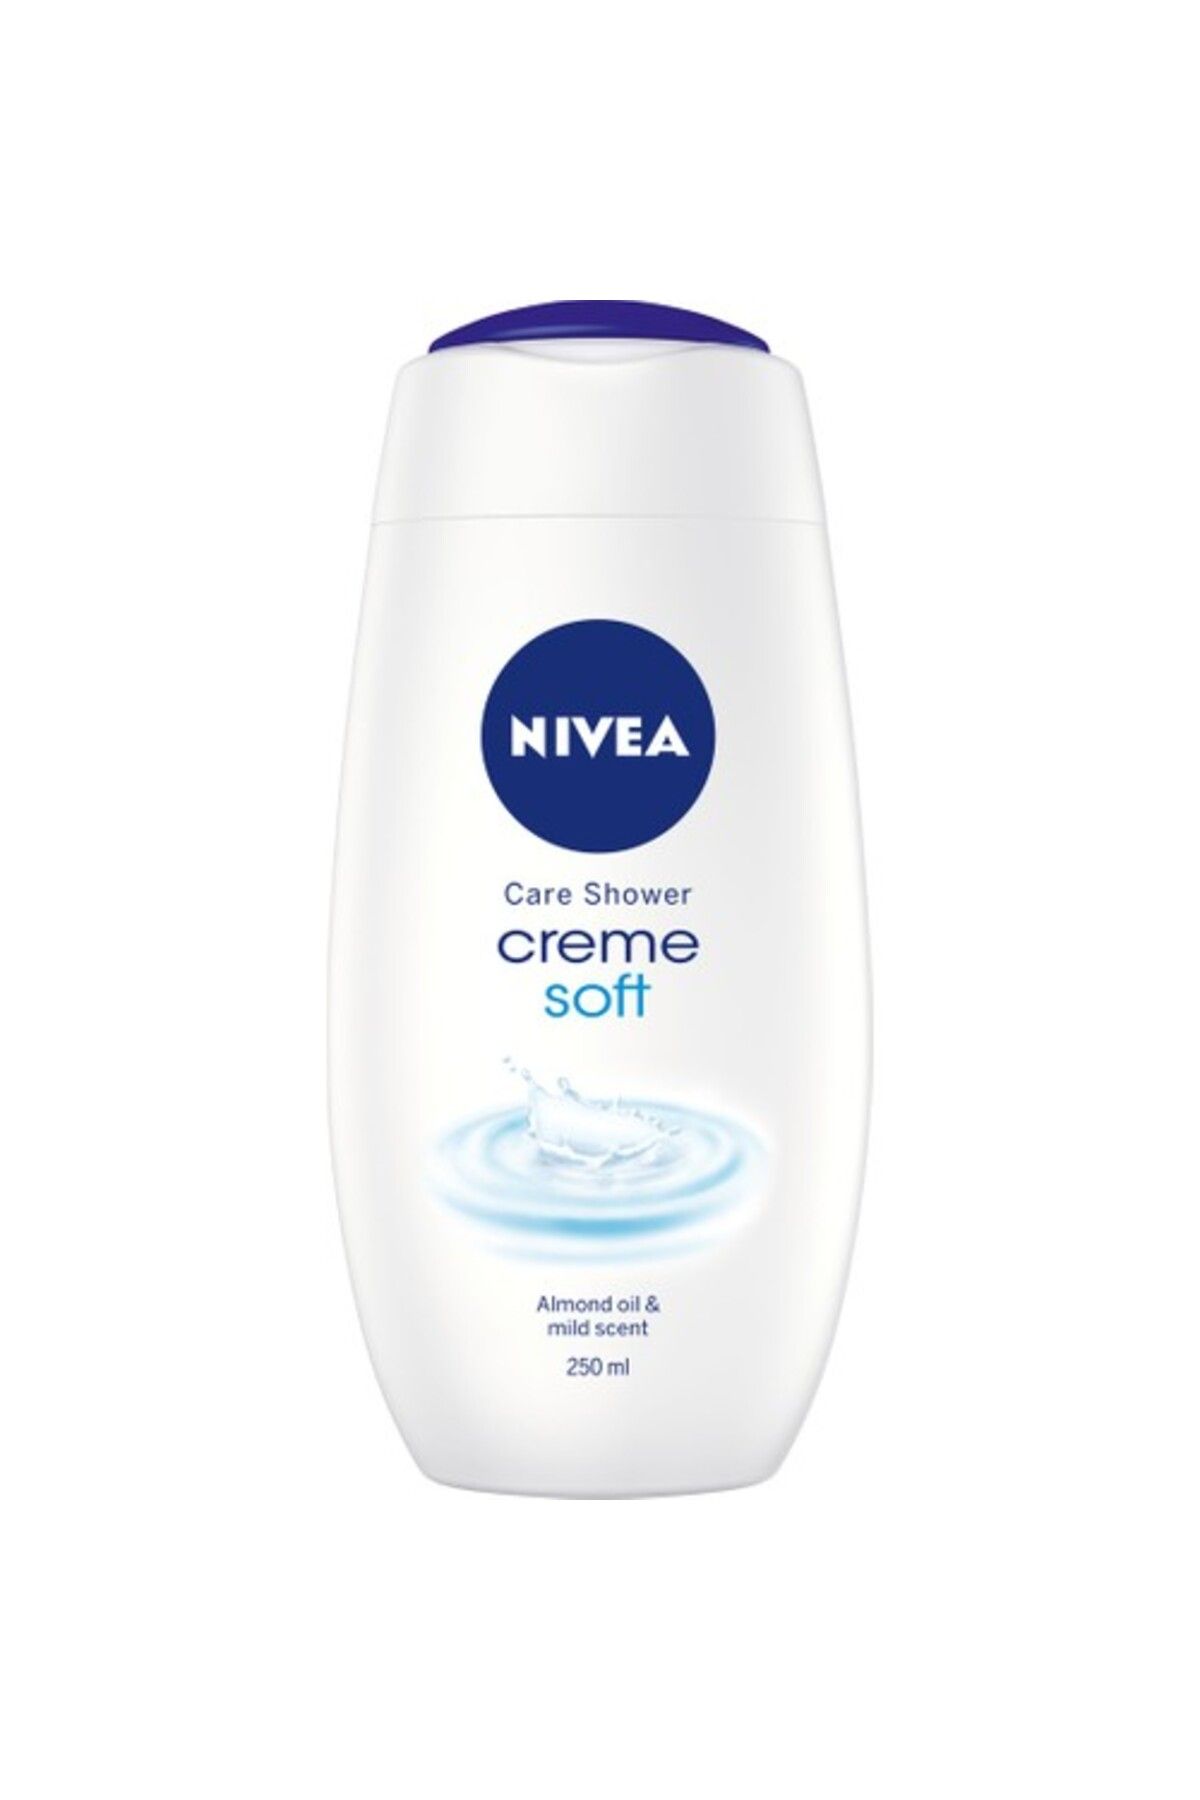 NIVEA Creme Soft Kremsi Dokunuş Banyo Ve Duş Jeli 250ml